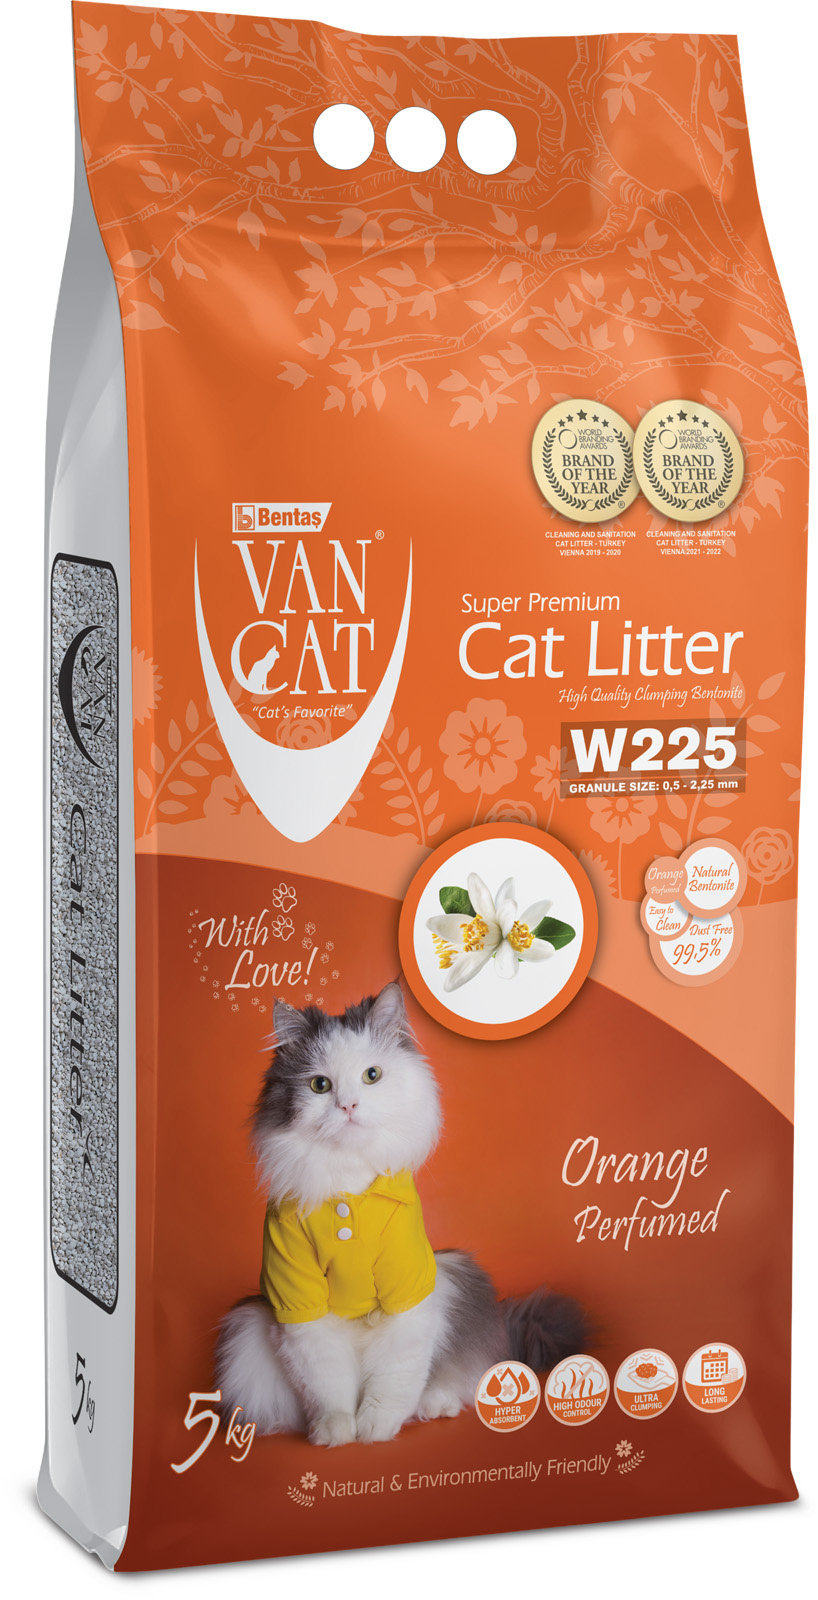 Van Cat Van Cat комкующийся наполнитель без пыли с ароматом апельсина, пакет (5 кг) van cat van cat комкующийся наполнитель 100% натуральный без пыли 15 кг